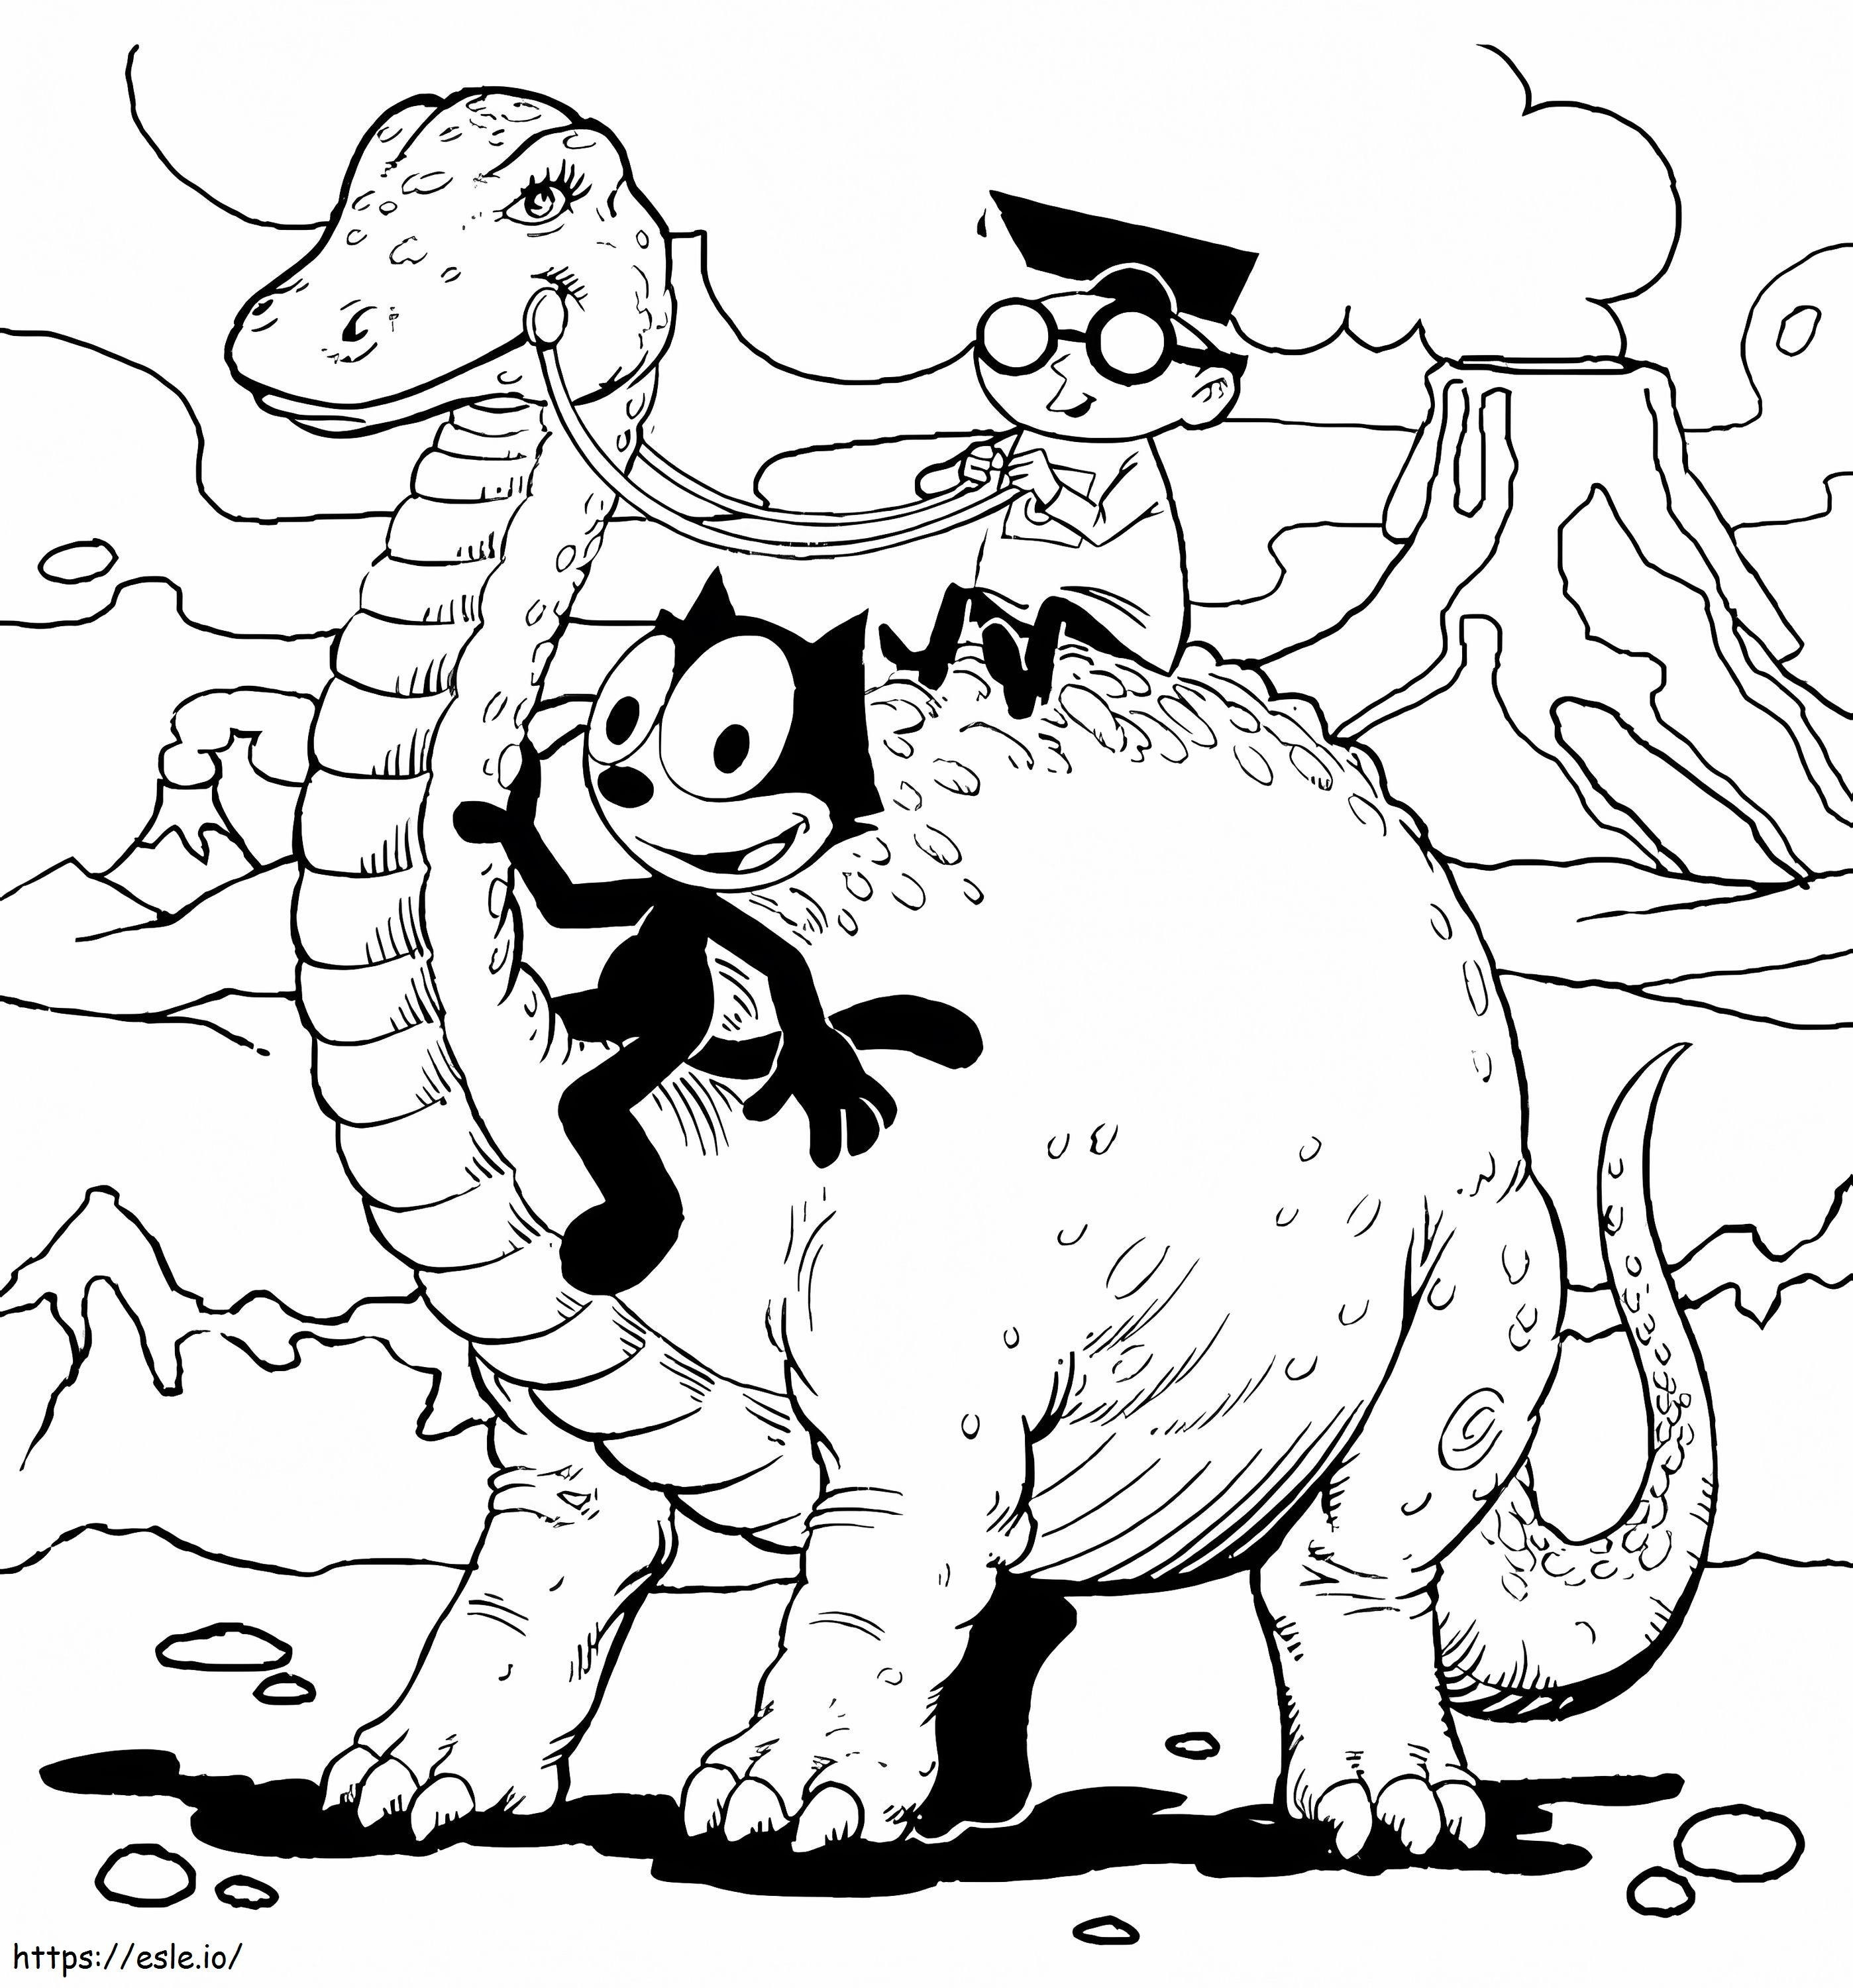 Felix Kot i Dinozaur kolorowanka